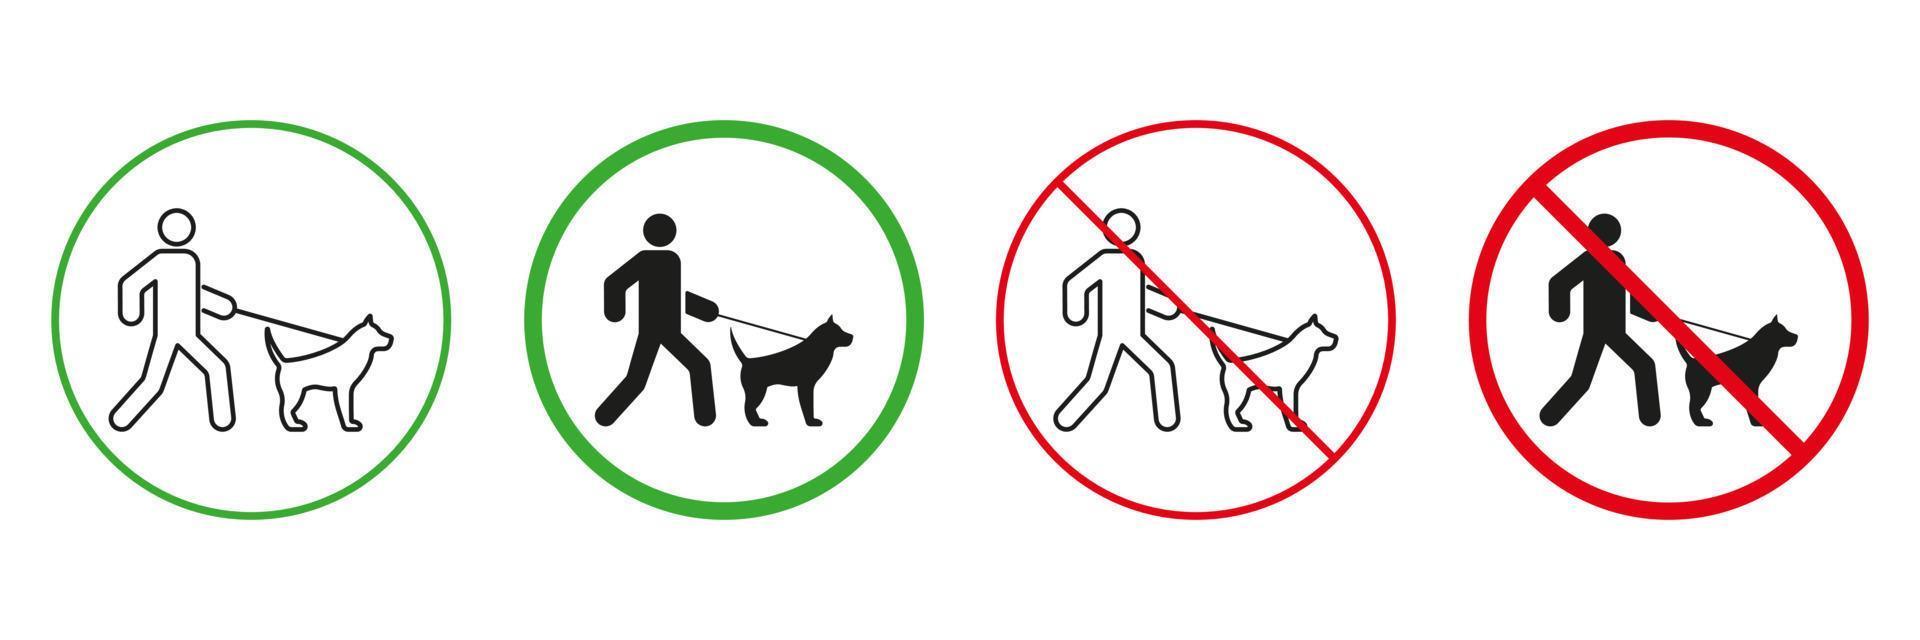 zon för gående hund röd och grön varning tecken. manlig och sällskapsdjur på koppel promenad linje och silhuett ikoner uppsättning. tillåten och förbjuden promenad djur- område piktogram. isolerat vektor illustration.